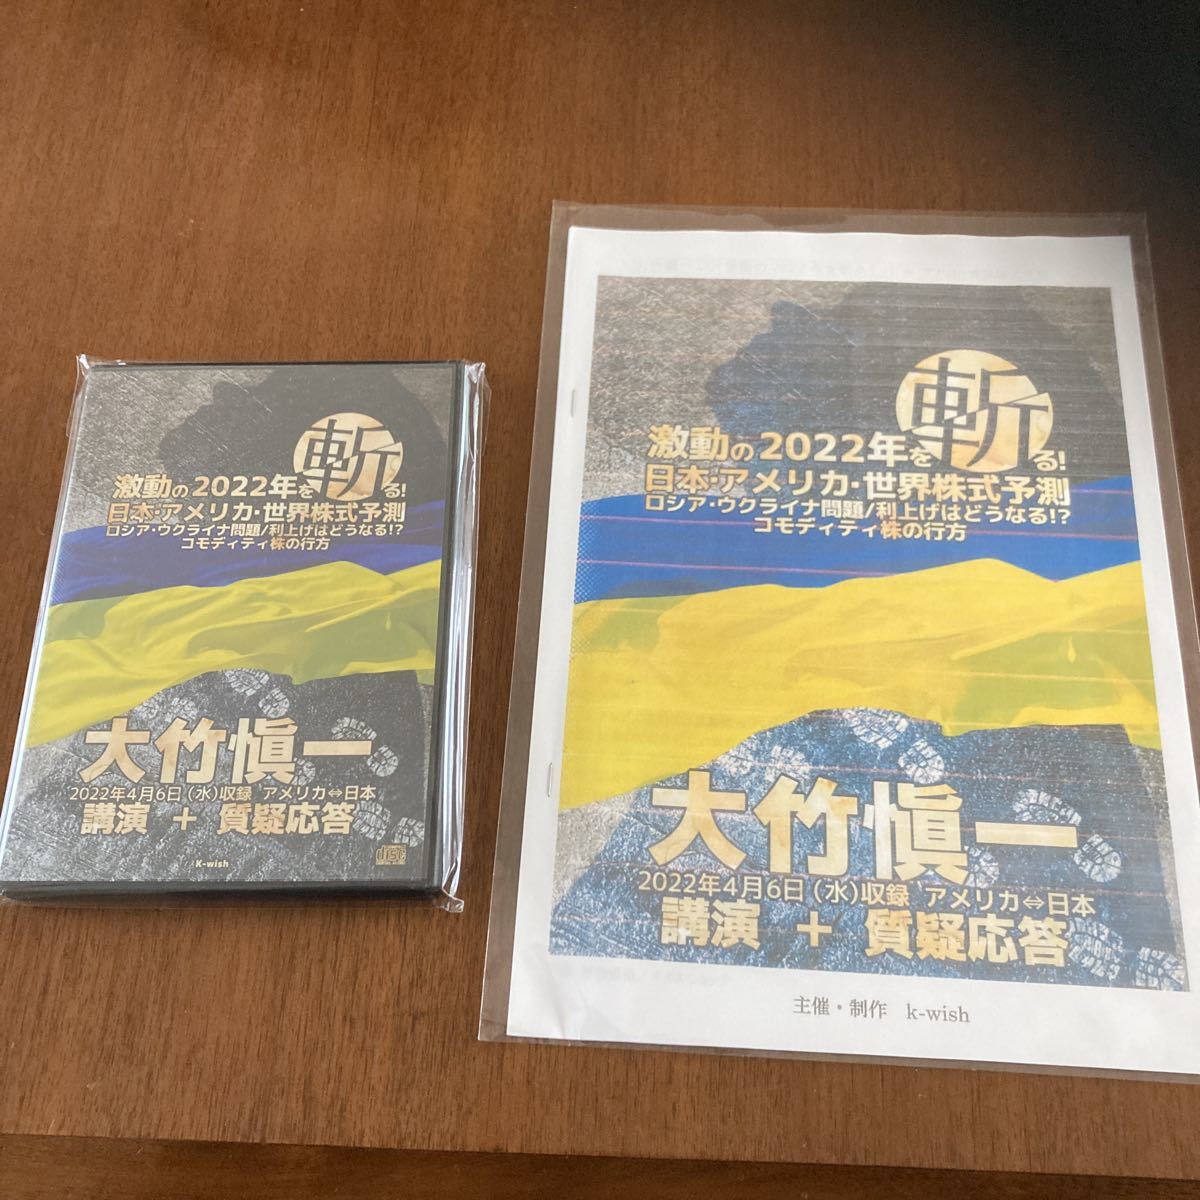 大竹愼一 (大竹慎一)最新セミナーCD『激動の2022年を斬る』CD3枚組 送料無料 2022年4月6日収録